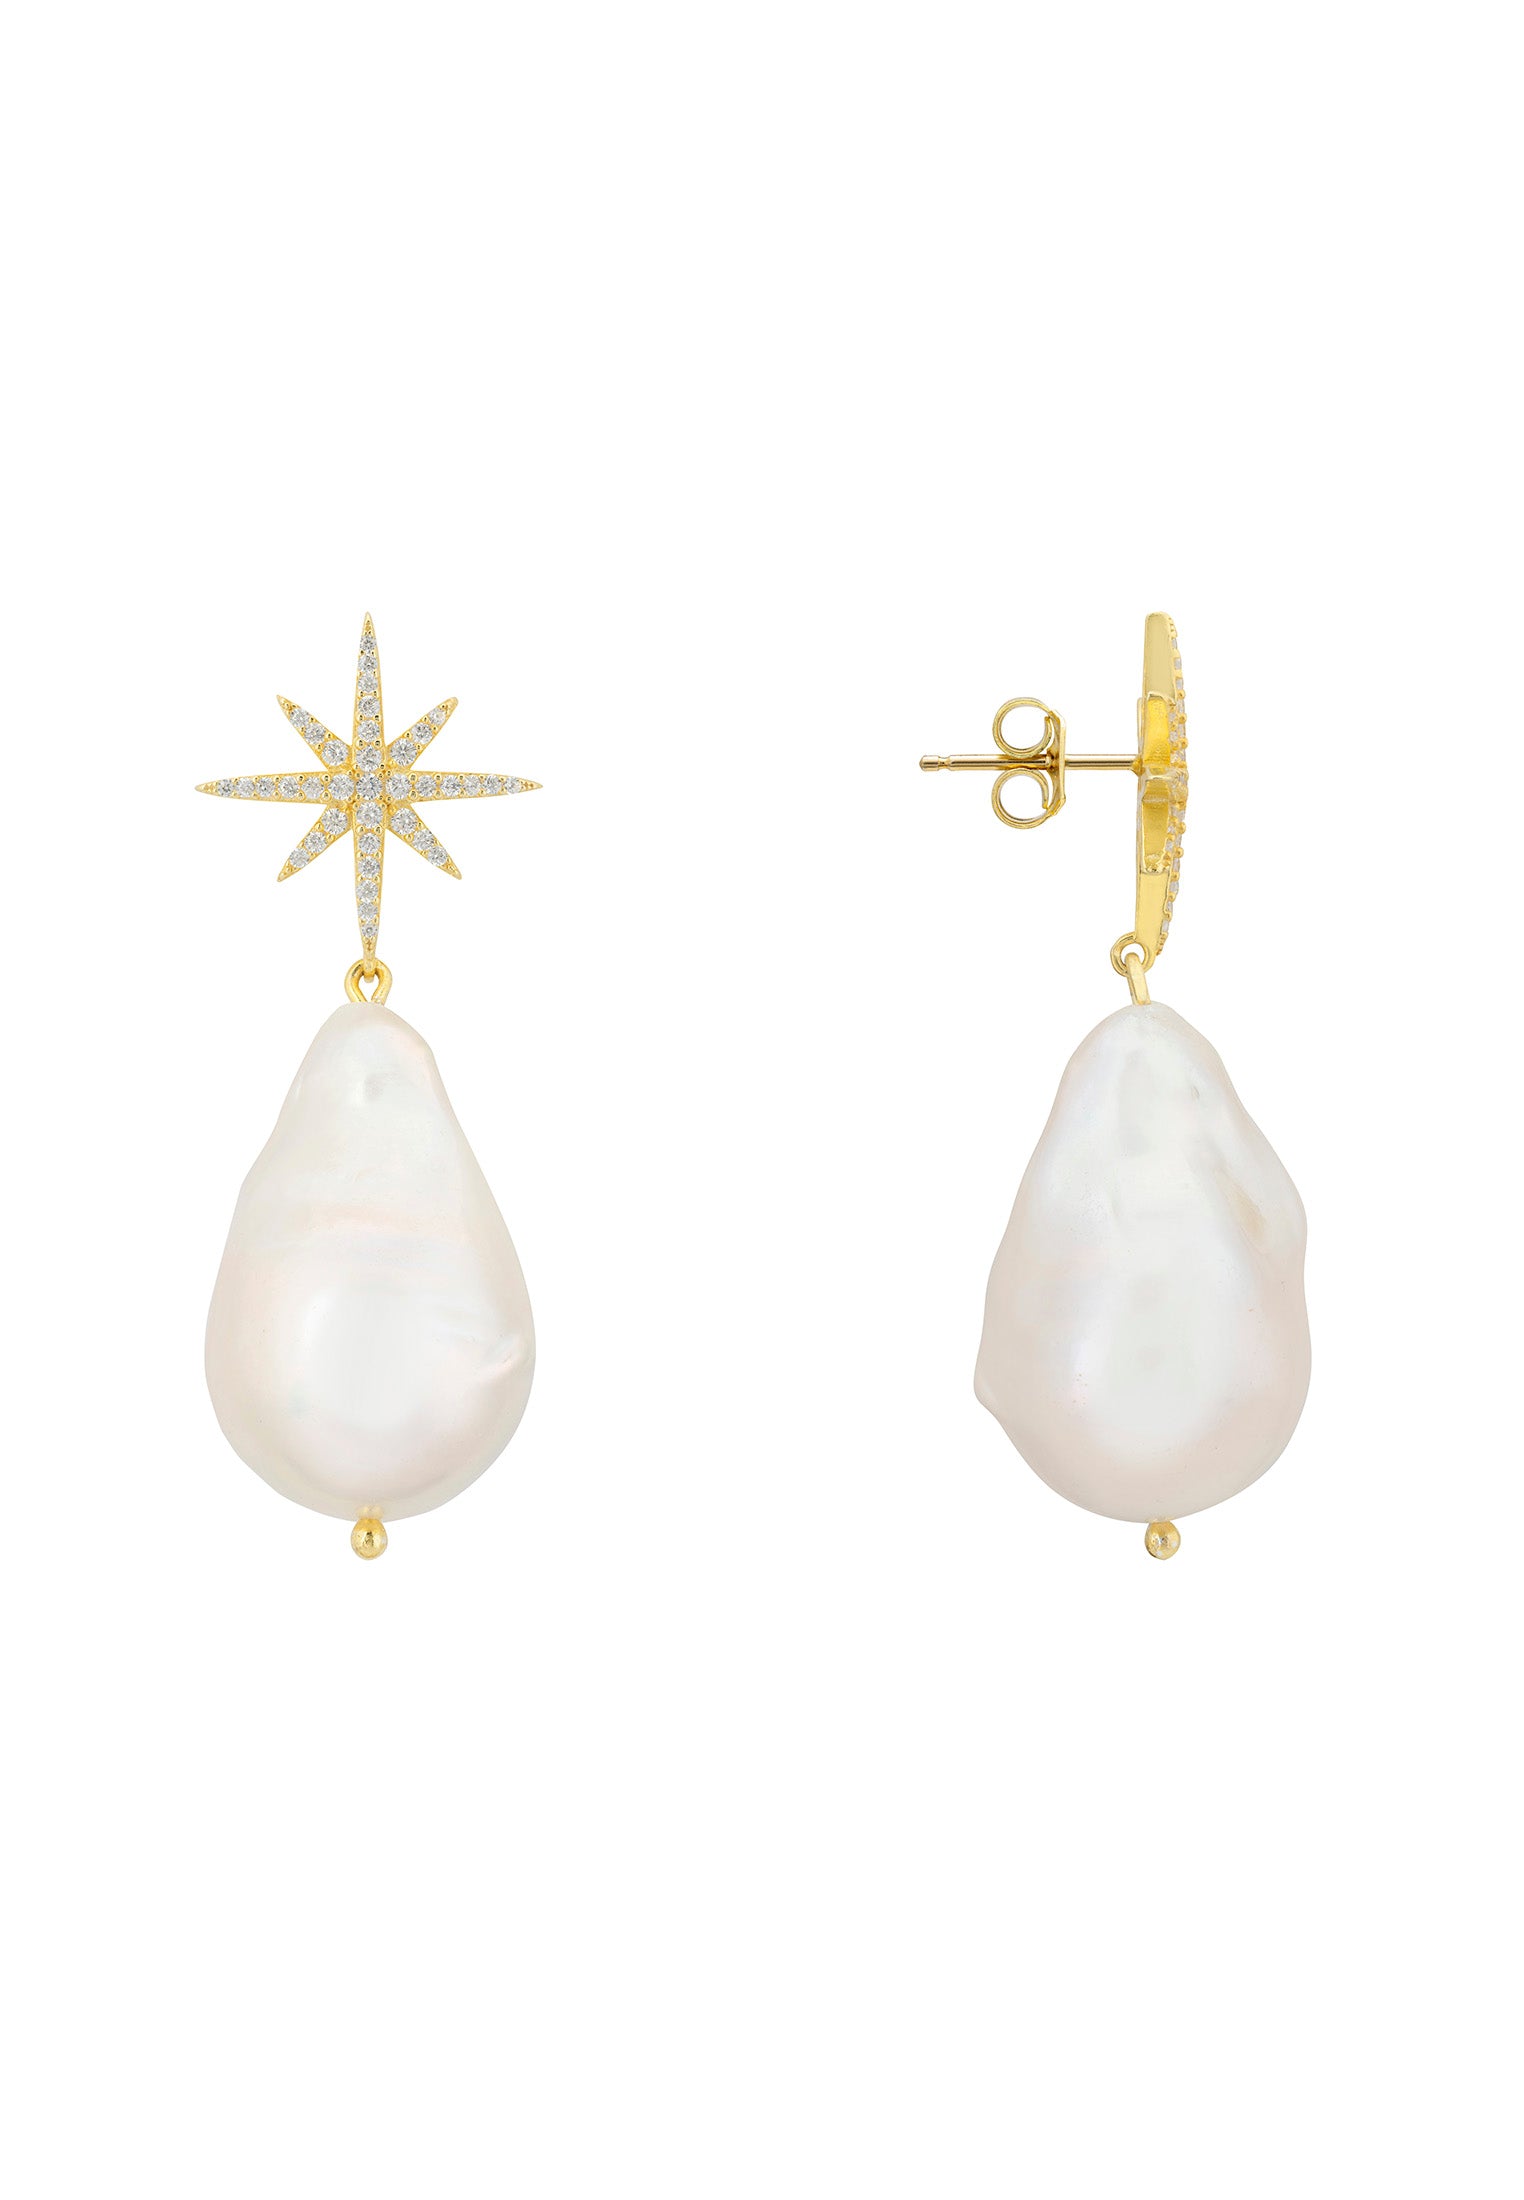 Pendientes colgantes con forma de estrella y perlas barrocas en oro